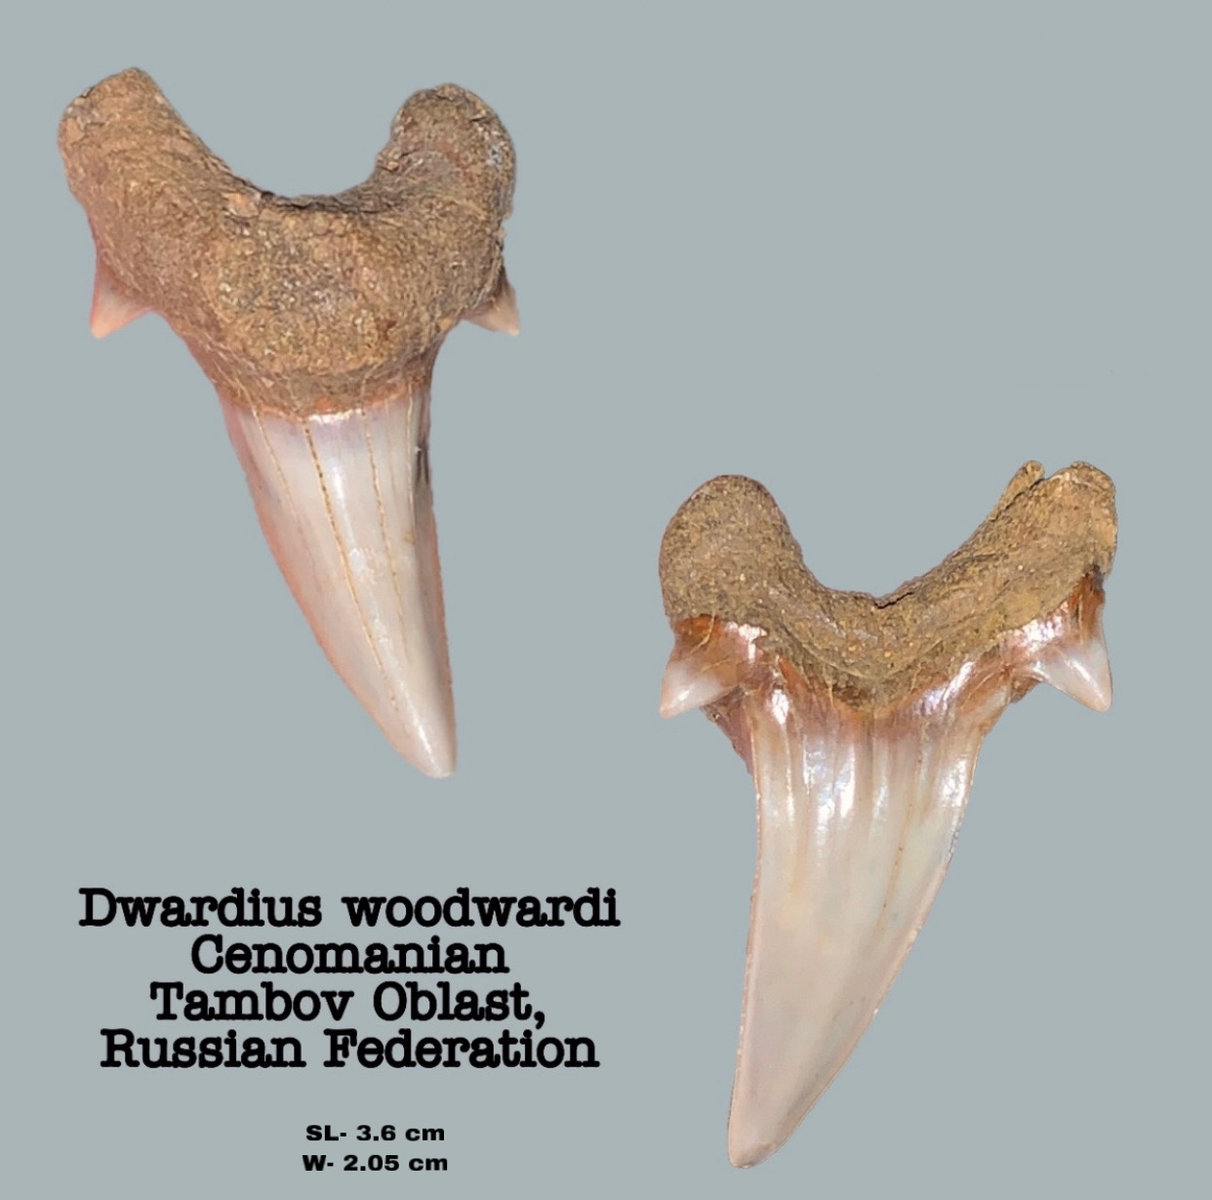 Dwardius woodwardi (lower)